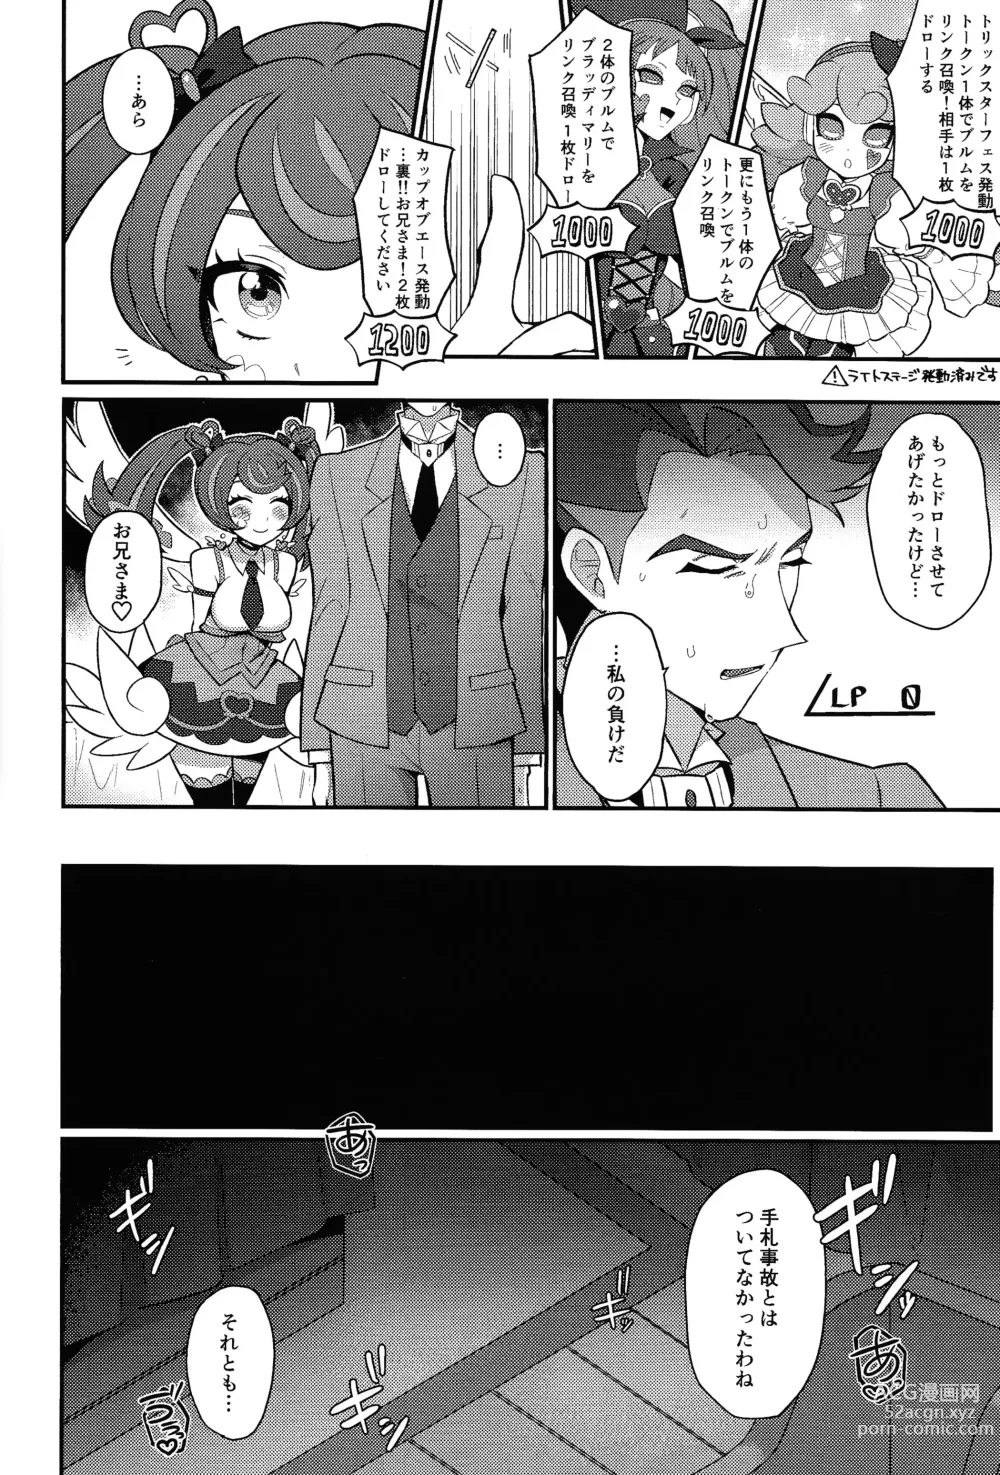 Page 25 of doujinshi Sotsugyo shite kara no o tanoshimi